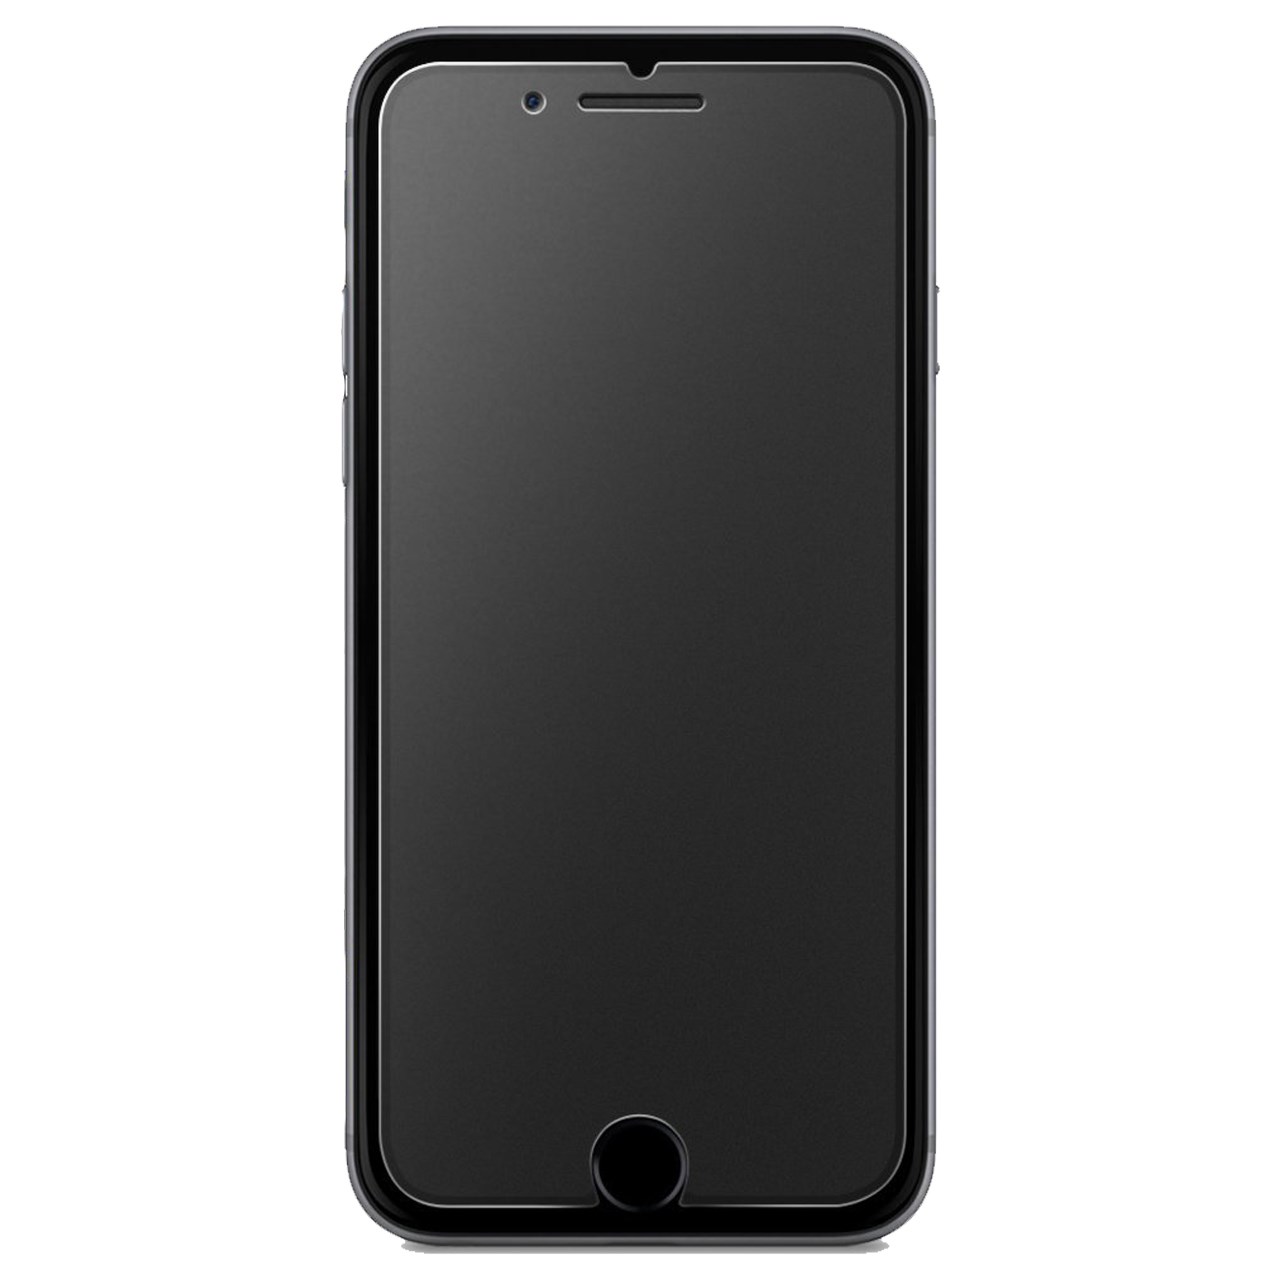 آنباکس محافظ صفحه نمایش گلس پرو مدل Premium Matte مناسب برای گوشی اپل آیفون 7/8 توسط سایه یزدان فر در تاریخ ۱۸ آبان ۱۳۹۹